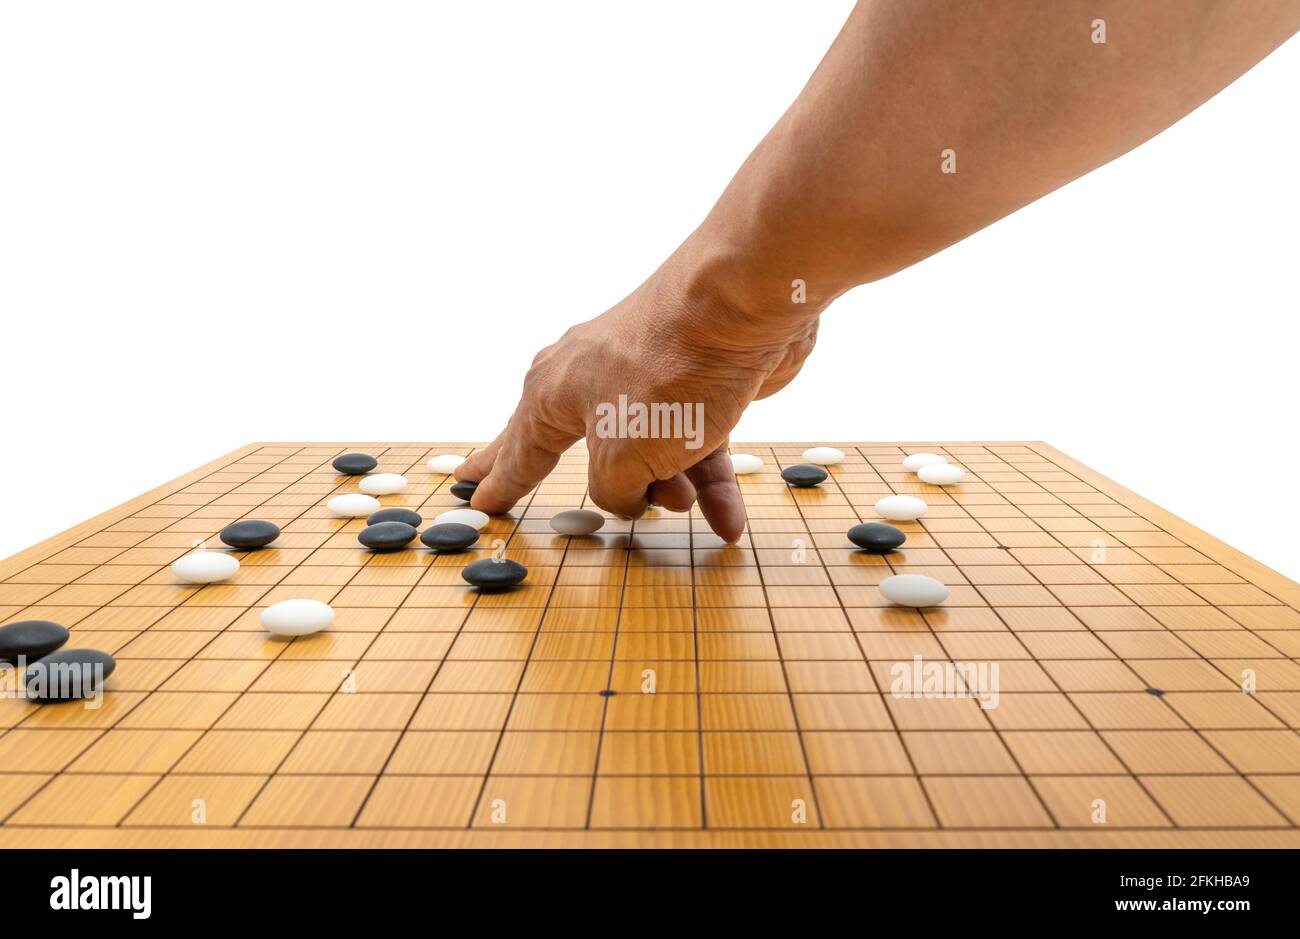 Gioco da tavolo a mano di Go o gioco da tavolo a scacchi giapponese,  utilizzare pietre nere e pietre bianche per creare territorio e catturare  l'avversario. Immagine isolata Foto stock - Alamy